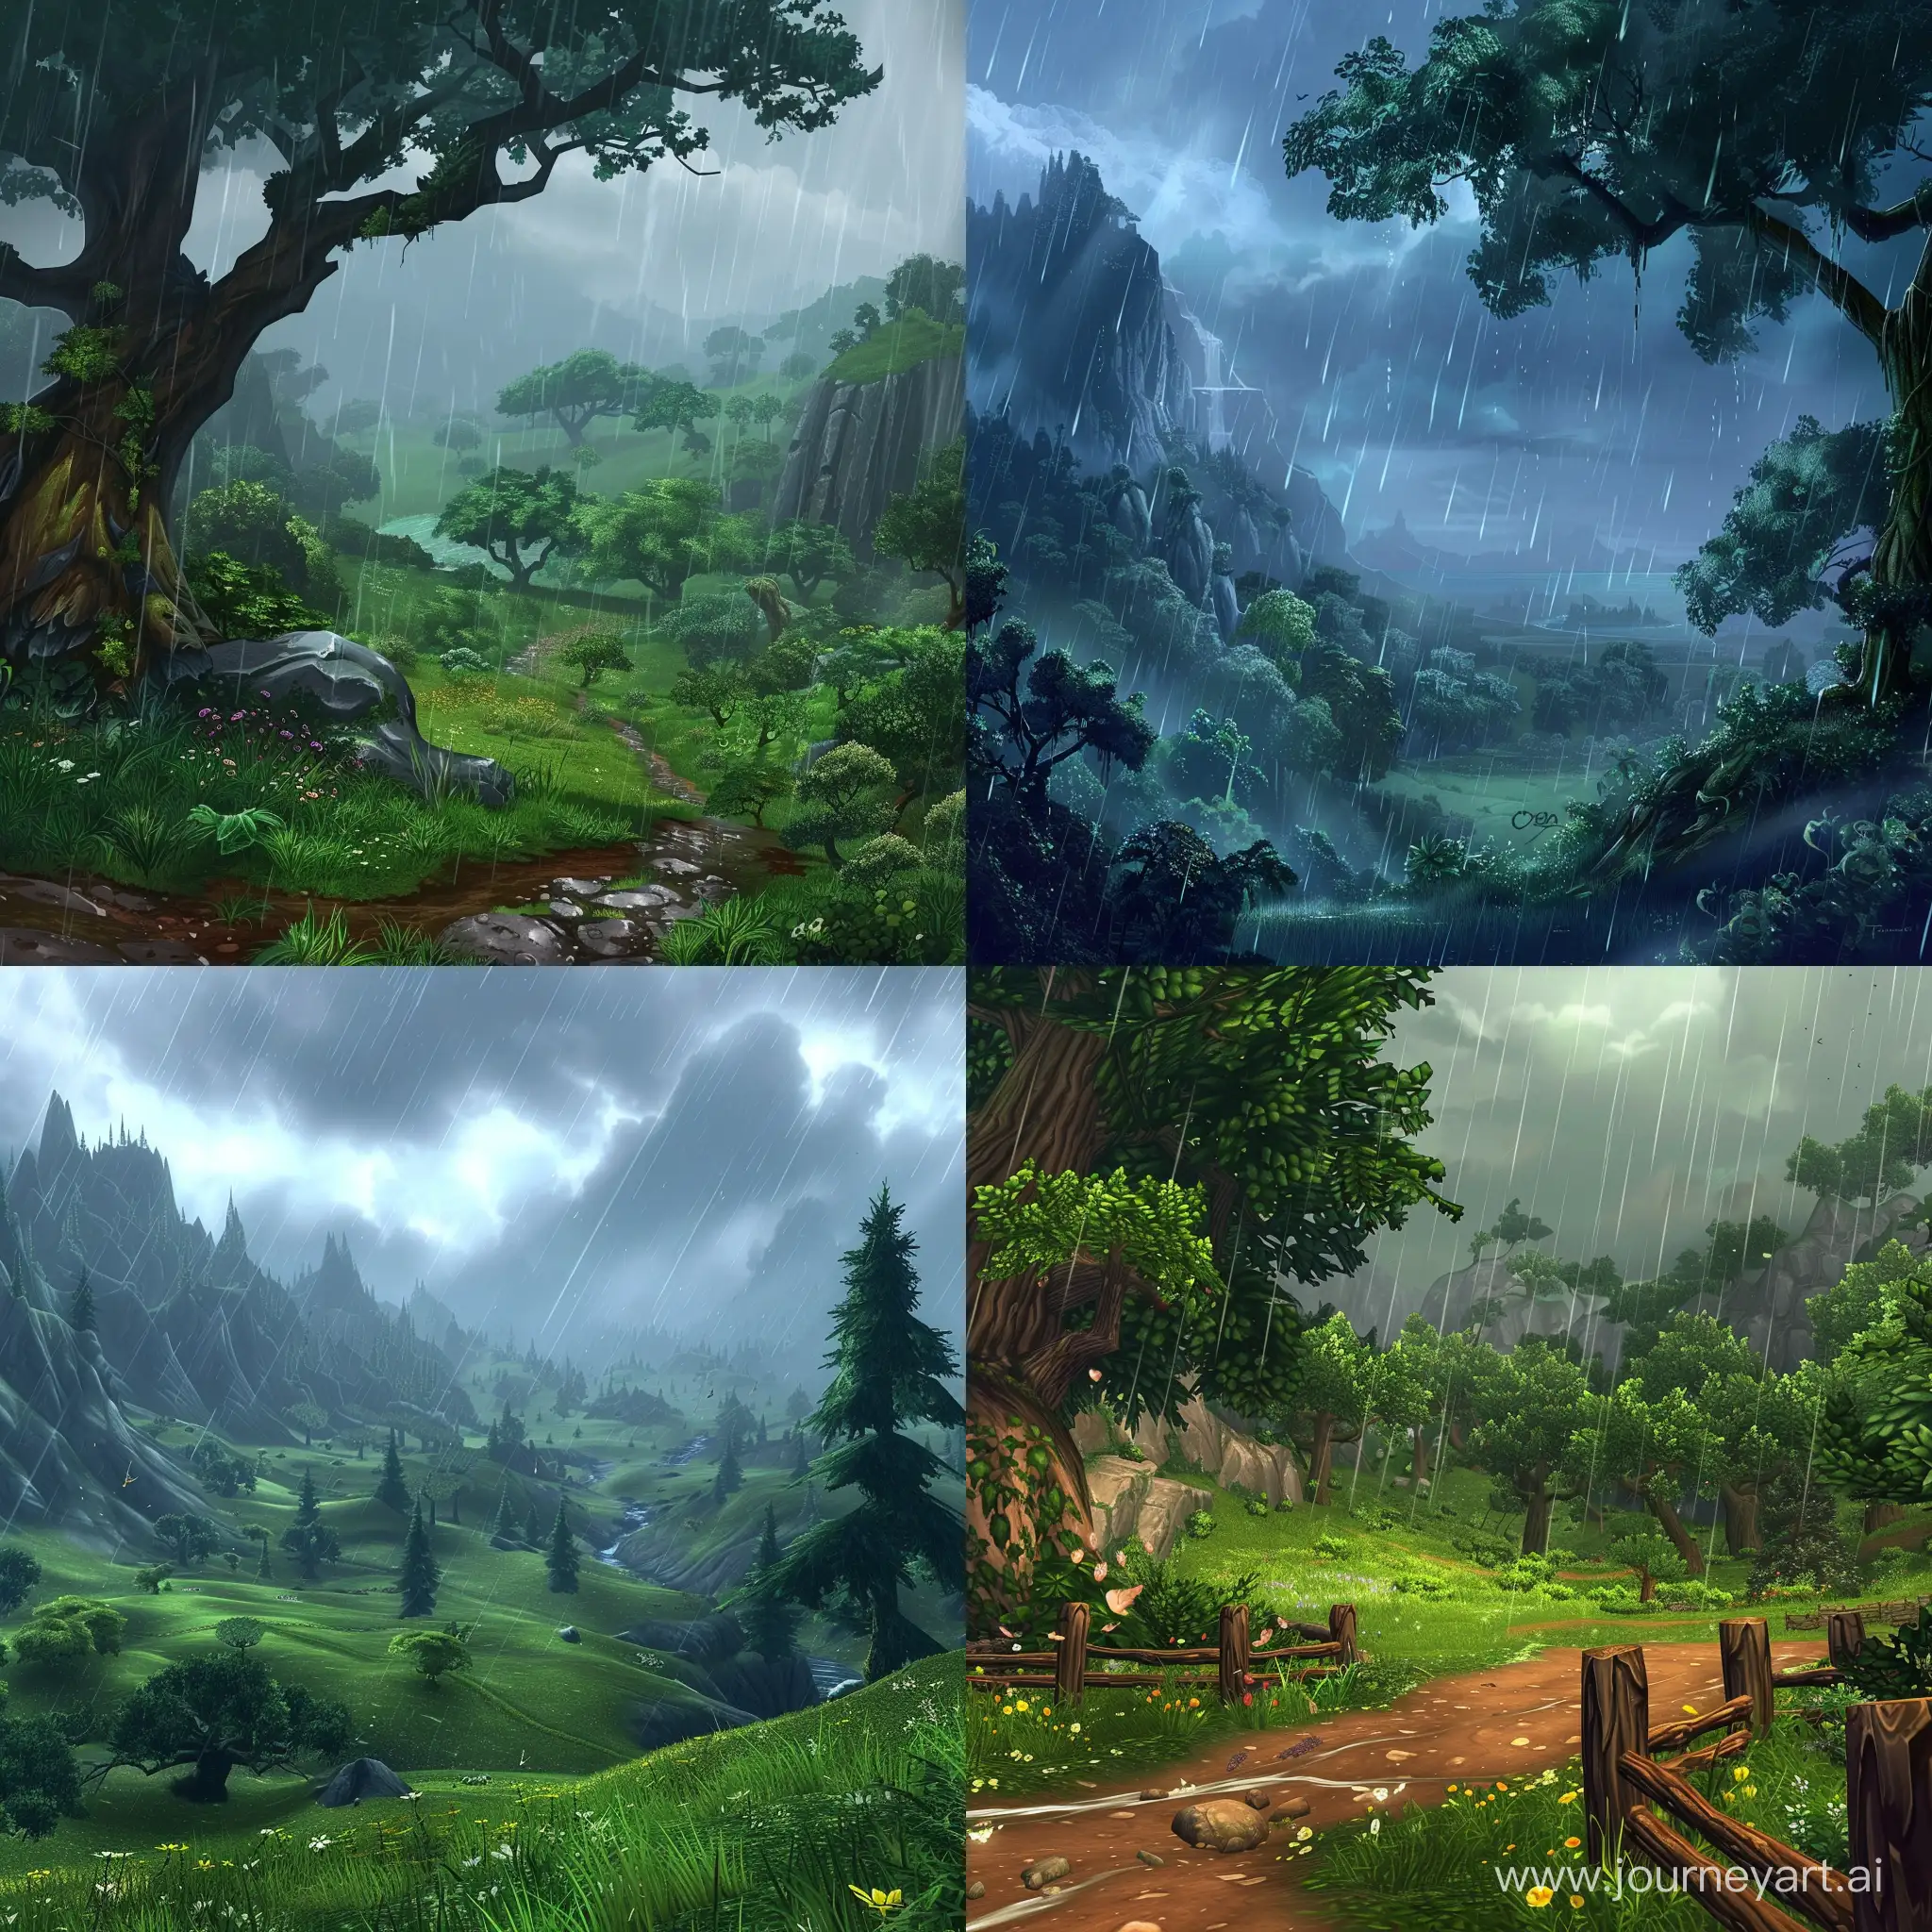 Epic-World-of-Warcraft-Rainy-Landscape-Art